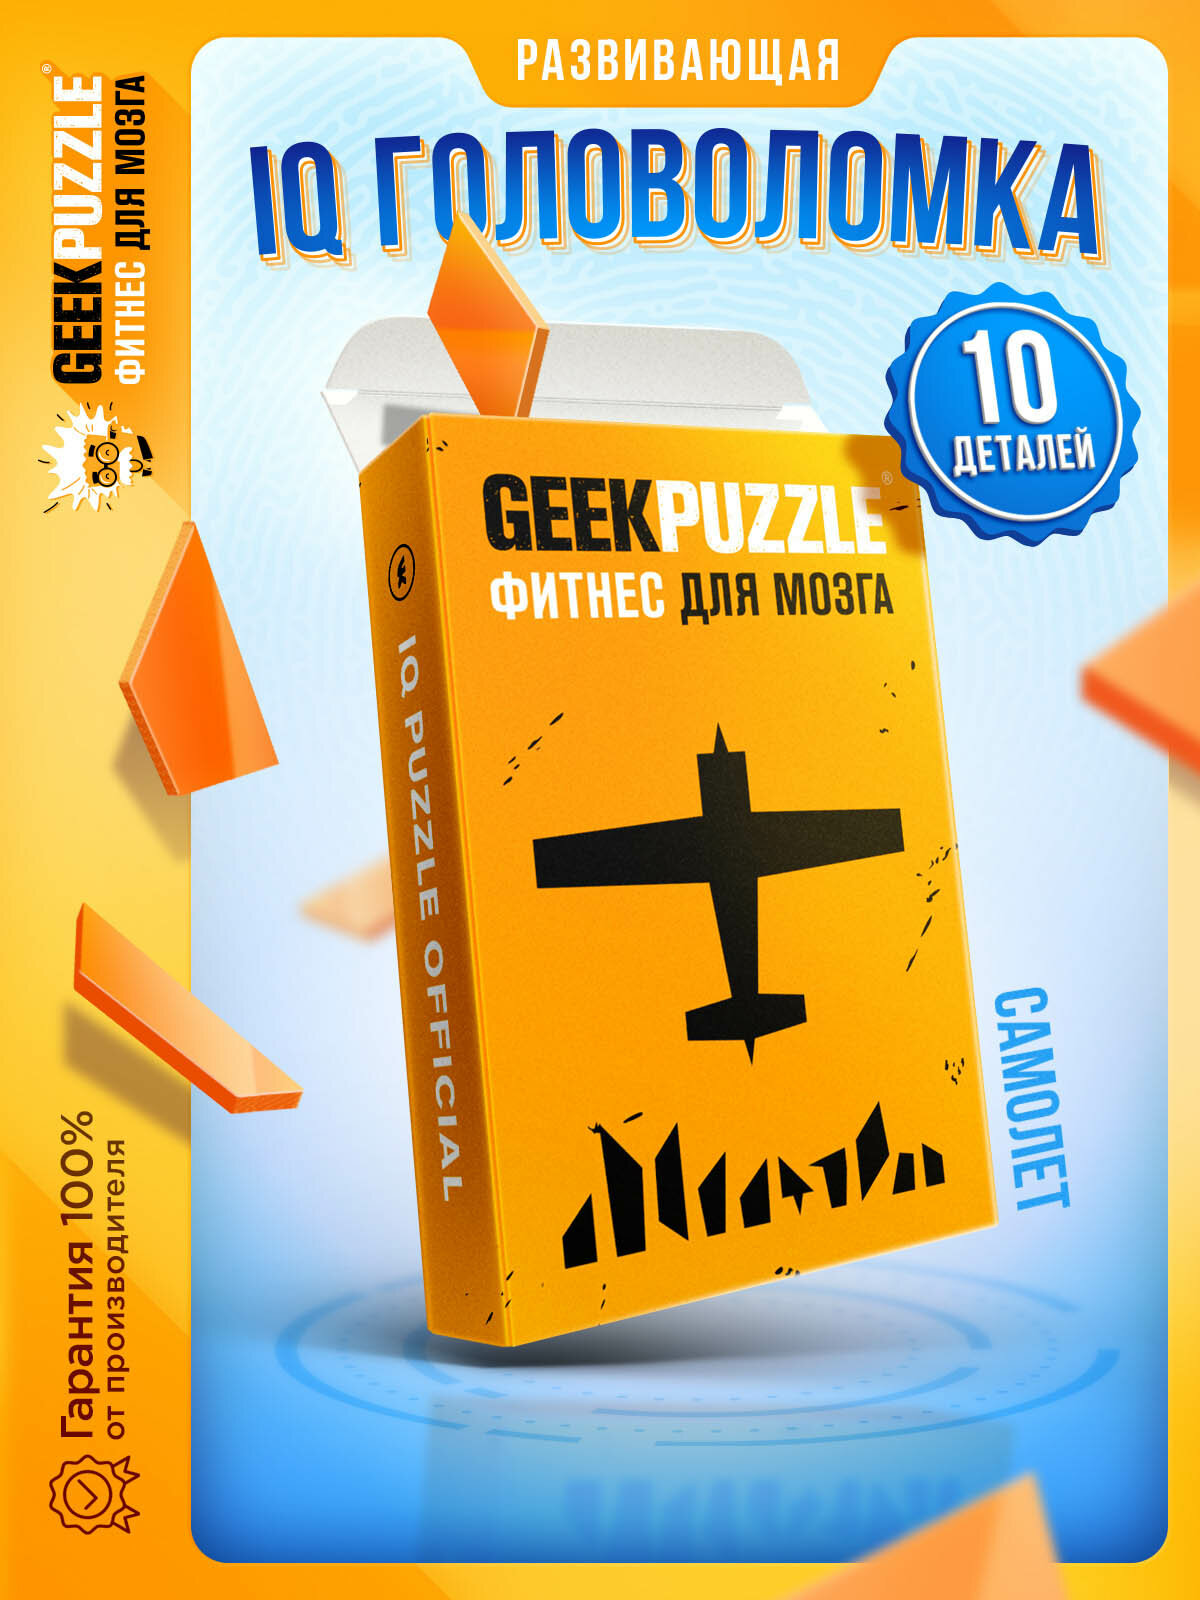 Головоломки / пазлы / GEEK PUZZLE / IQ PUZZLE “Самолет" (оранжевый 10 деталей) настольная игра подарок для детей и взрослых